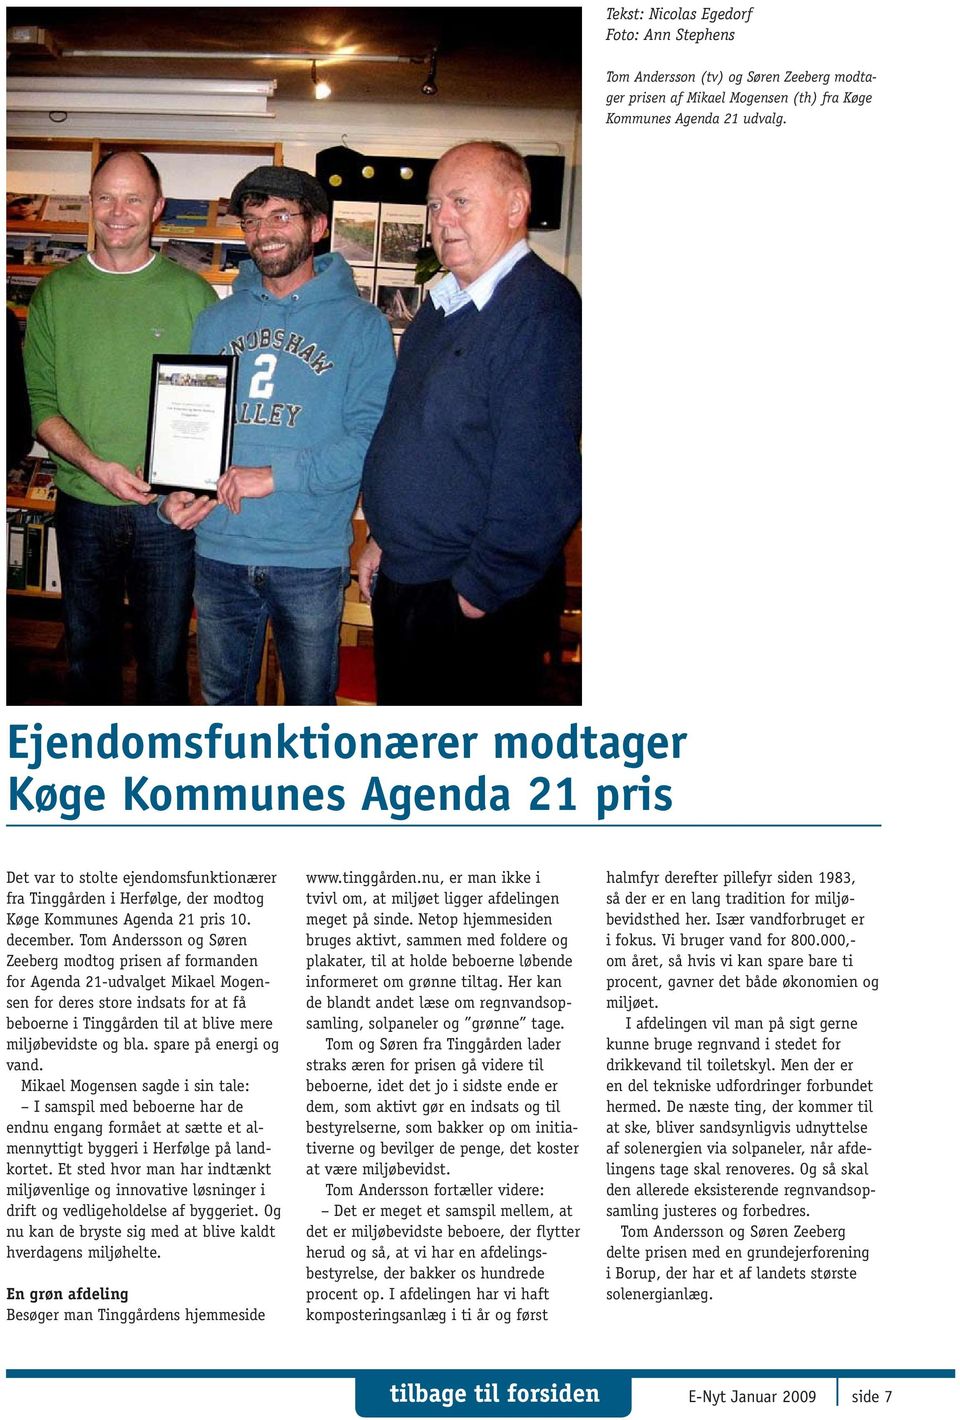 Tom Andersson og Søren Zeeberg modtog prisen af formanden for Agenda 21-udvalget Mikael Mogensen for deres store indsats for at få beboerne i Tinggården til at blive mere miljøbevidste og bla.